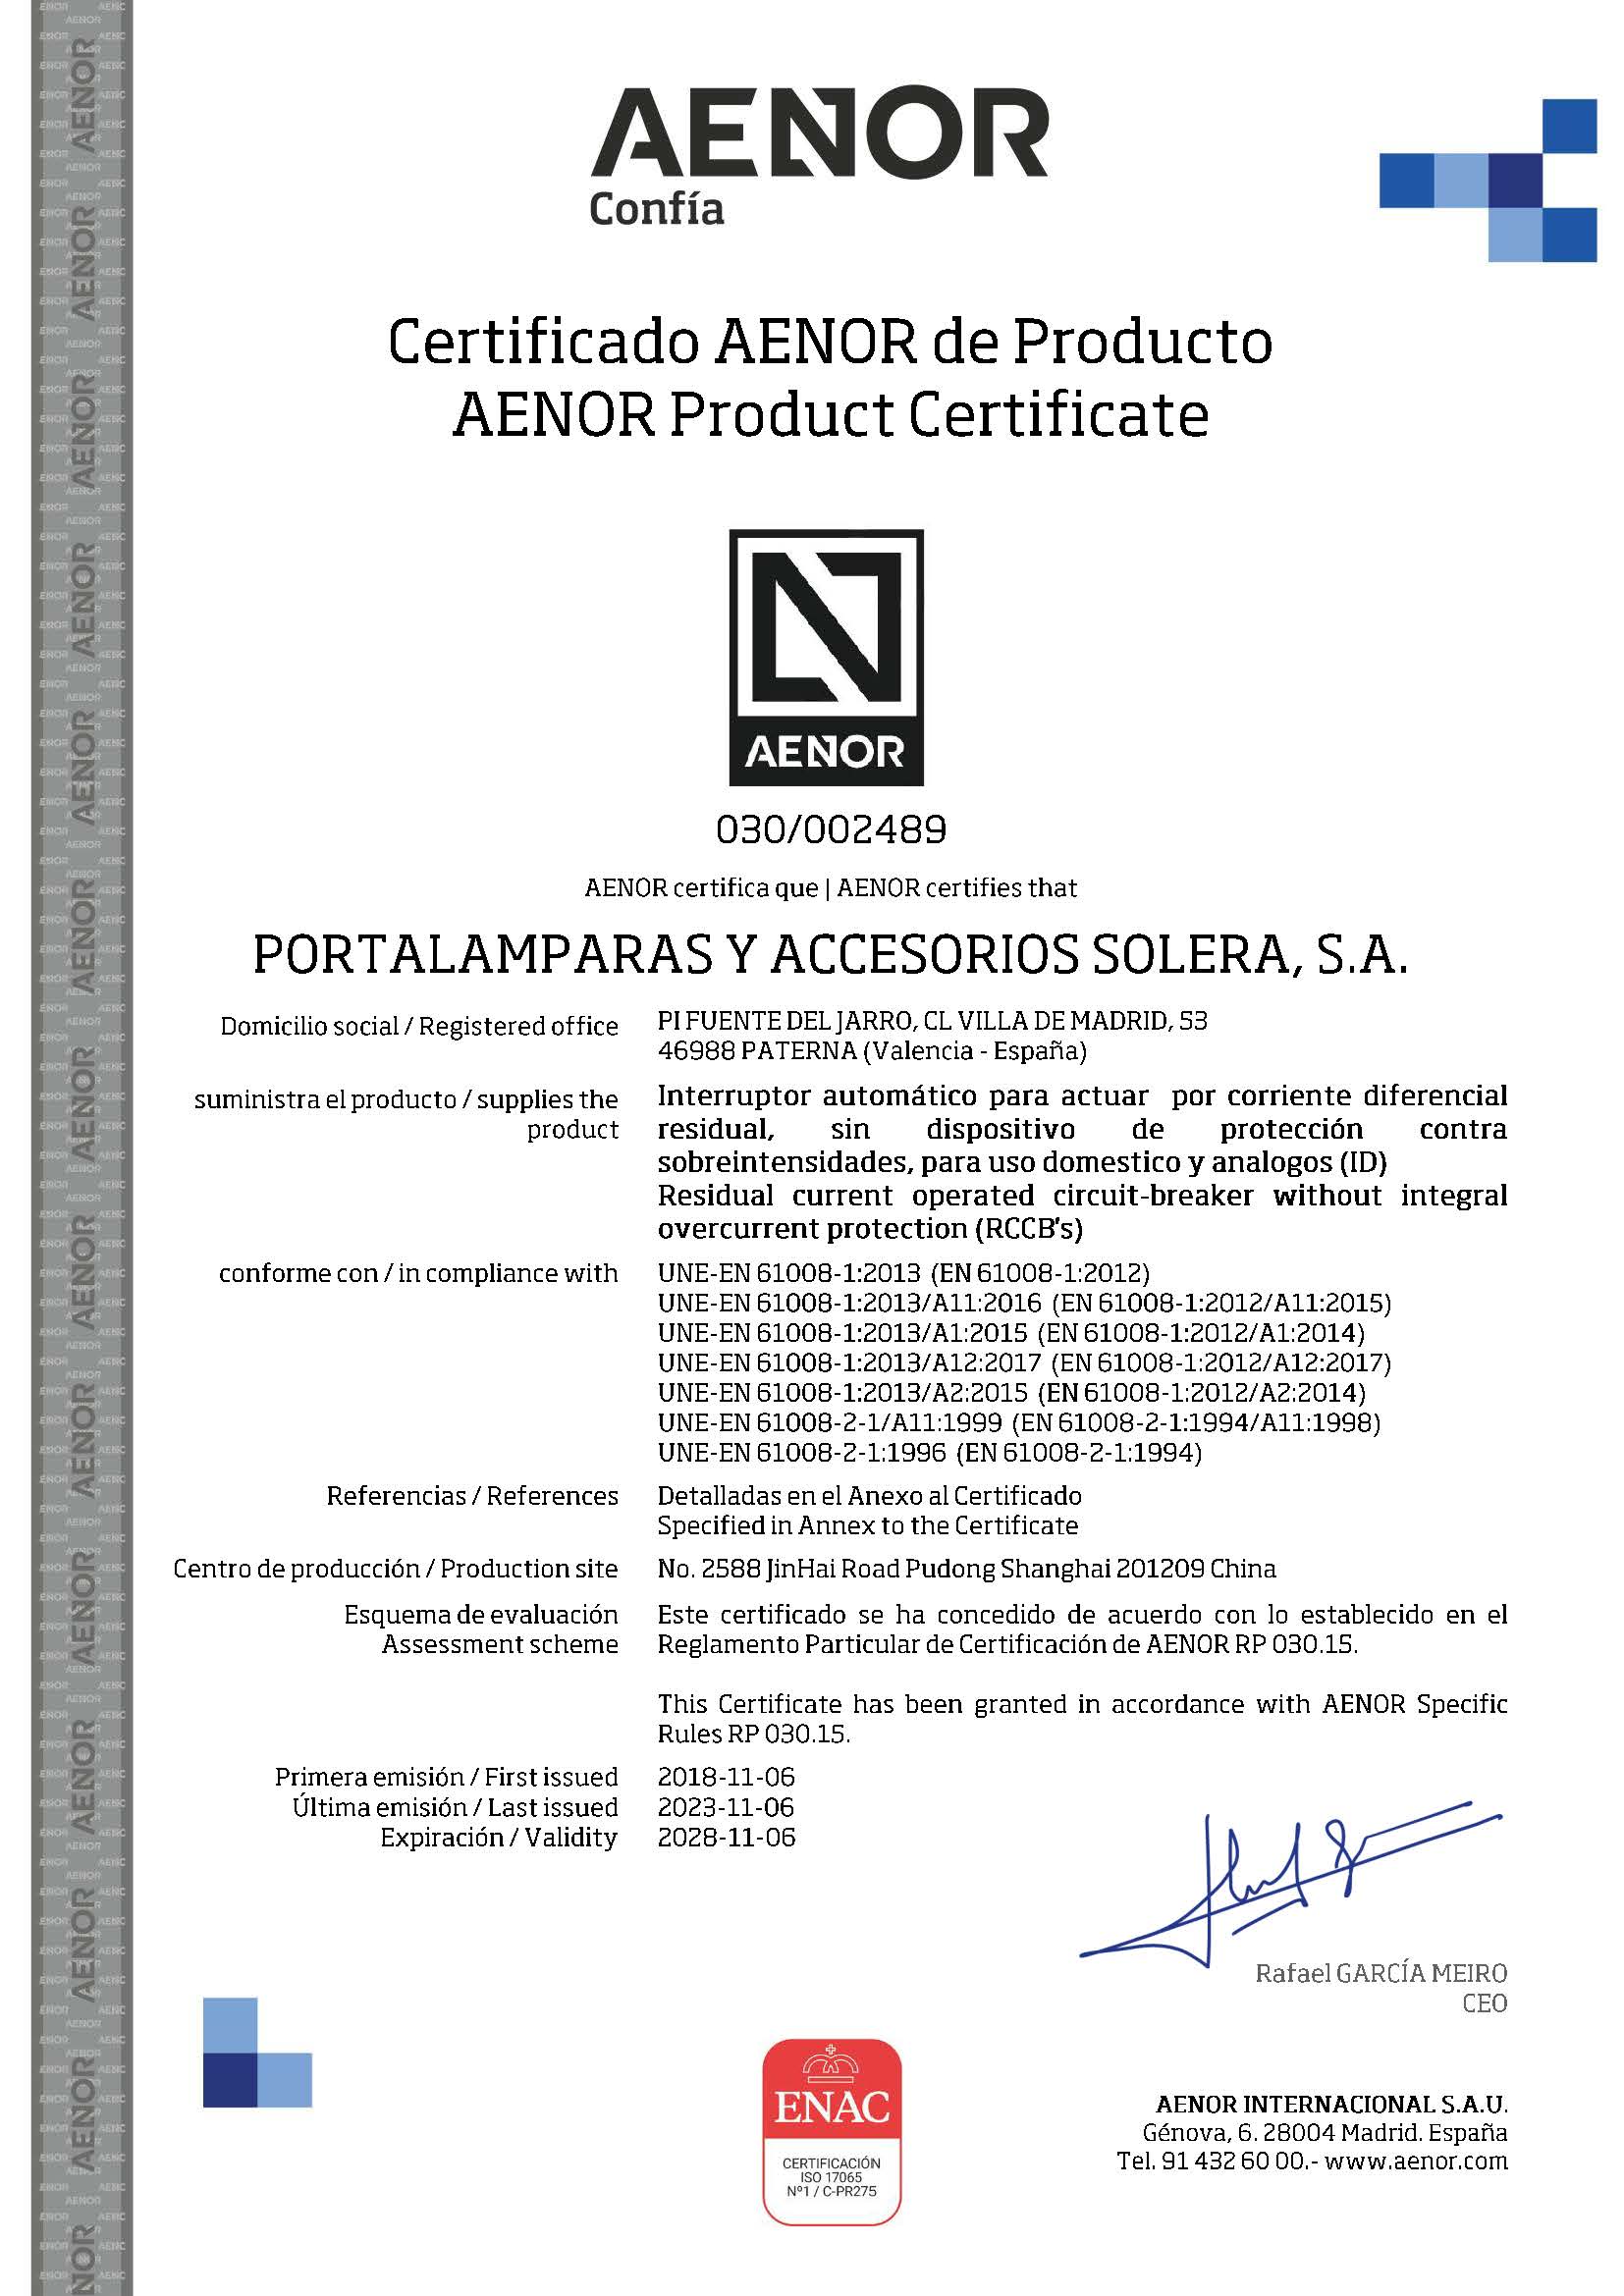 Certificado de producto AENOR para diferenciales